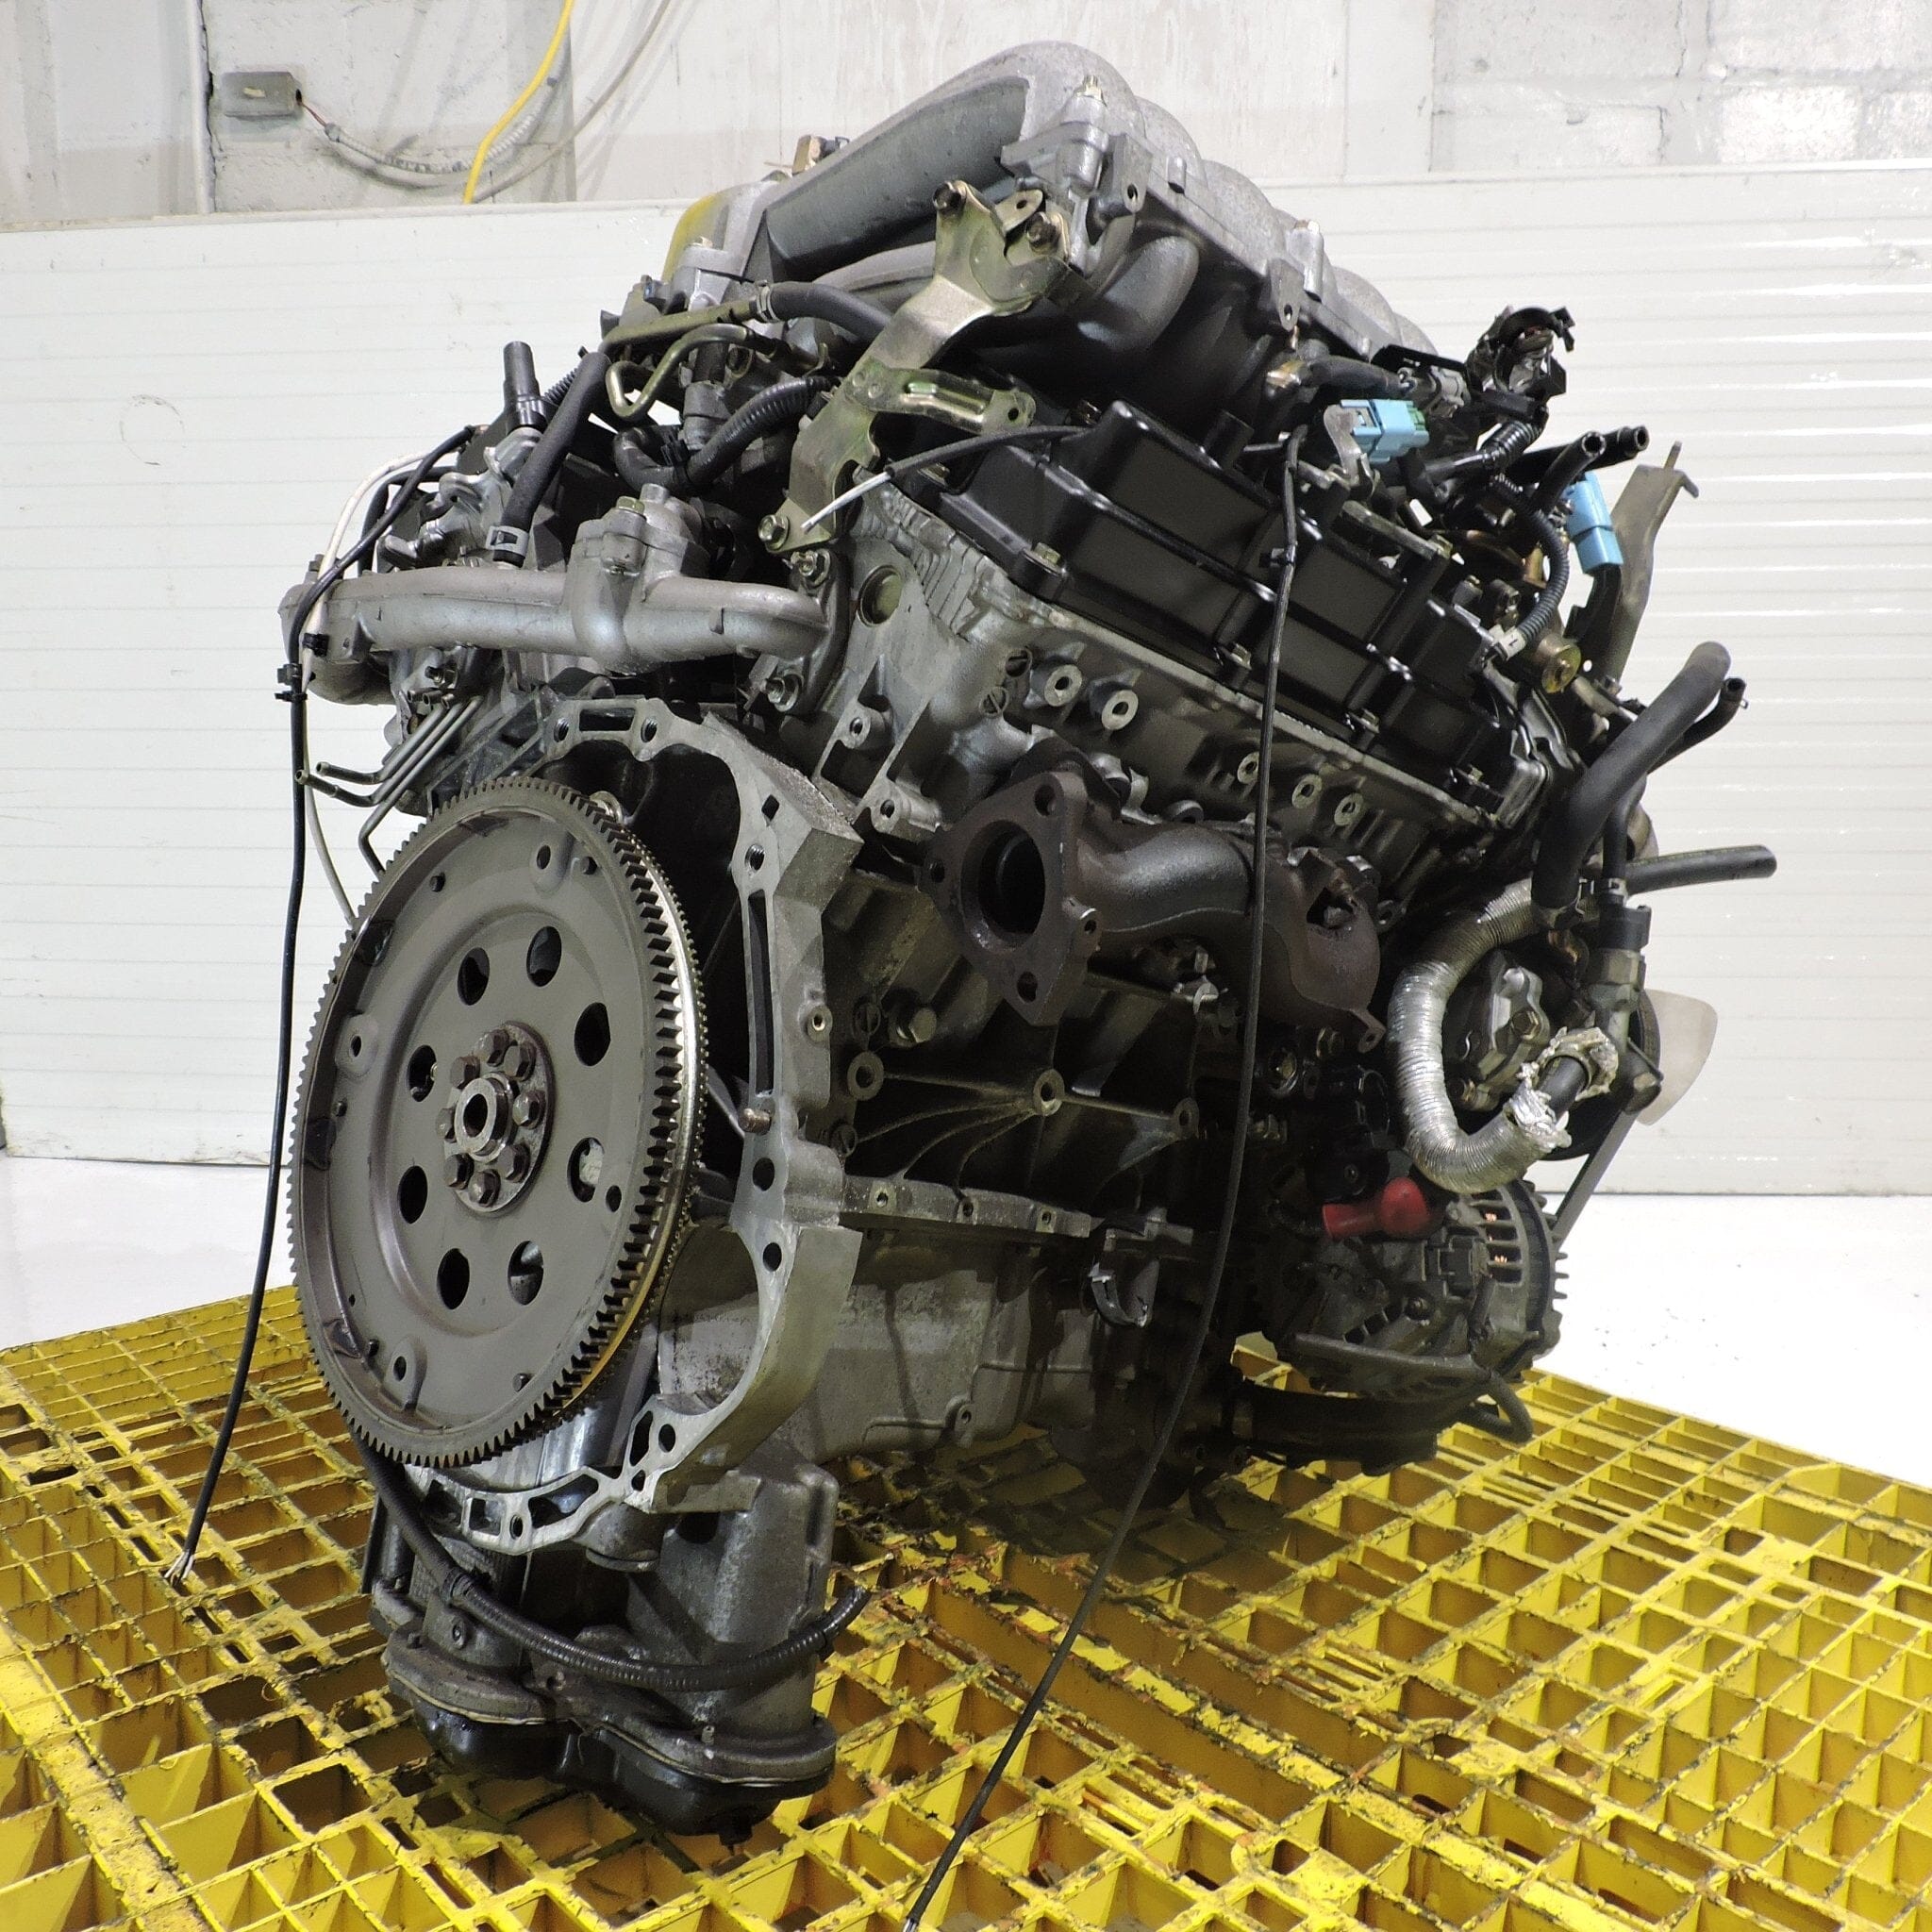 Nissan Pathfinder 2001-2002 3.5L V6 JDM Engine - VQ35DE – Low Mile 